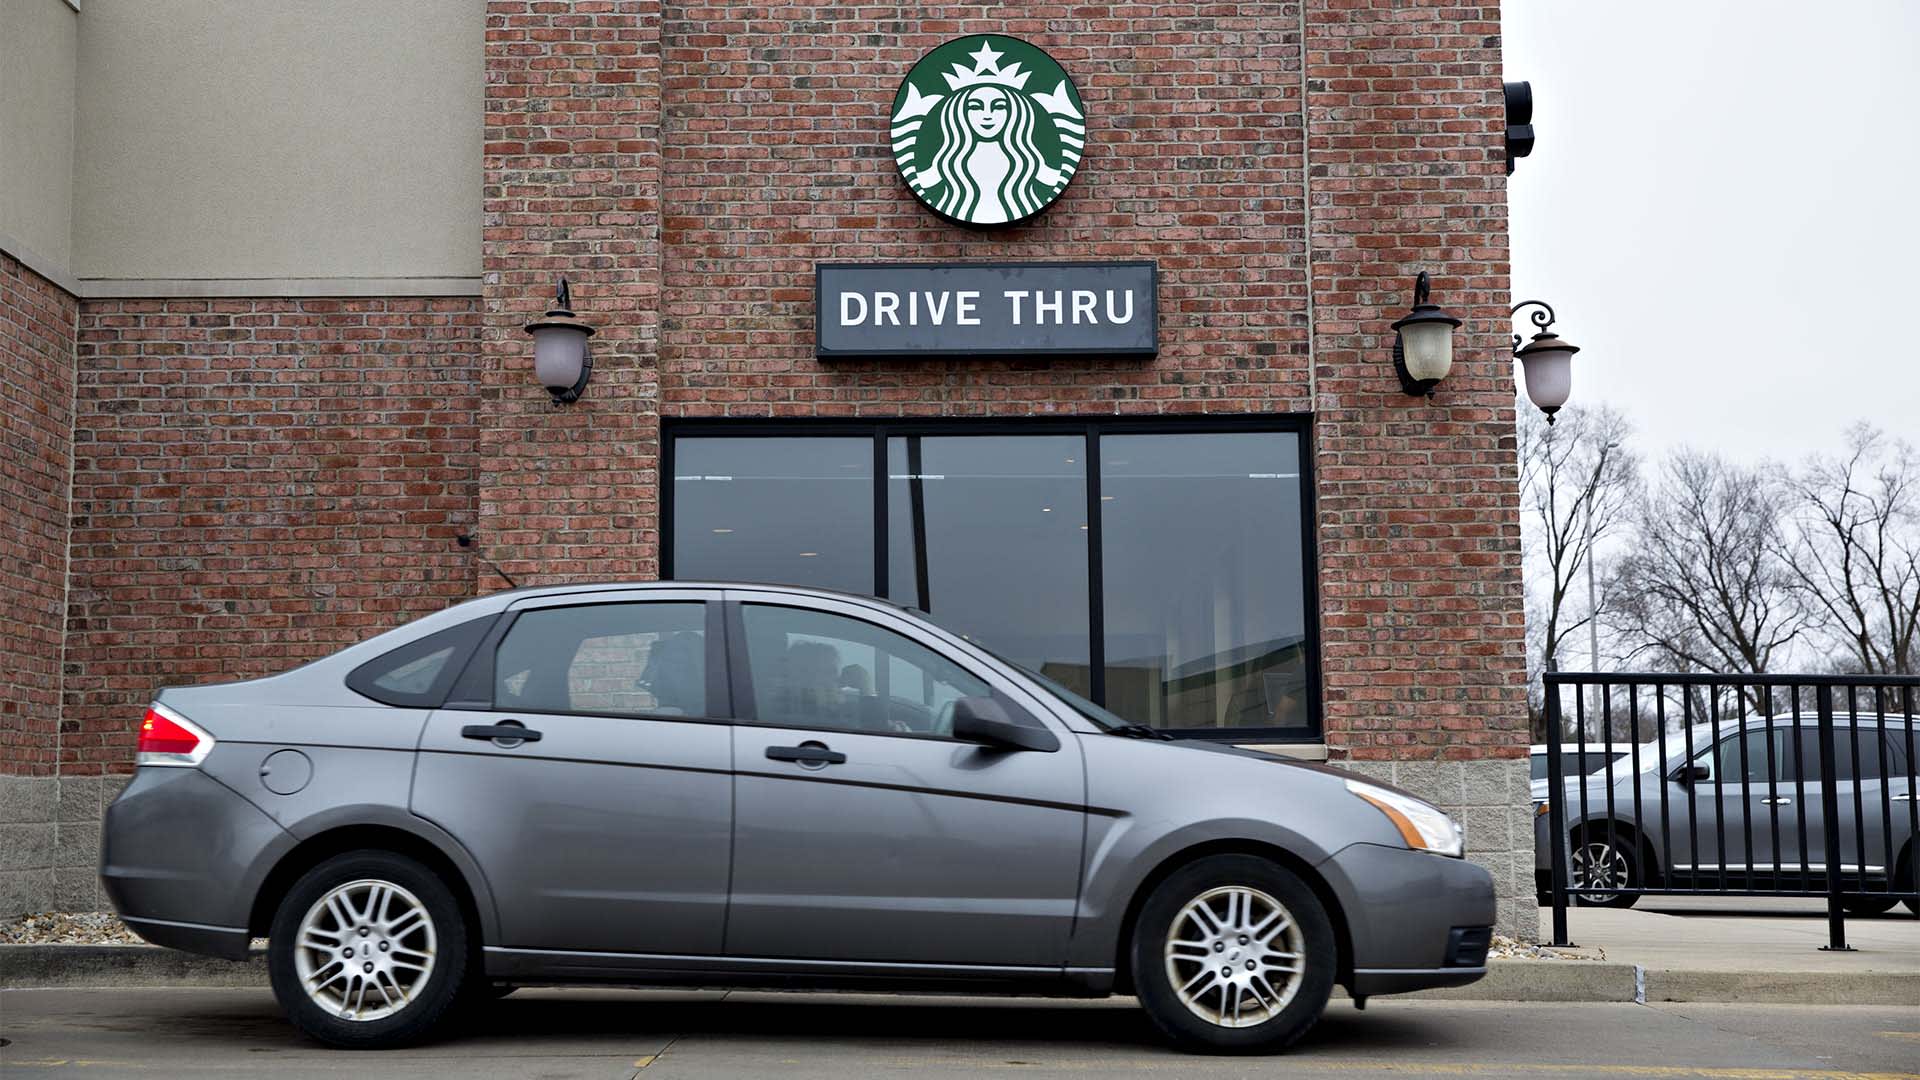 A Starbucks drive-through in Peoria, Illinois.